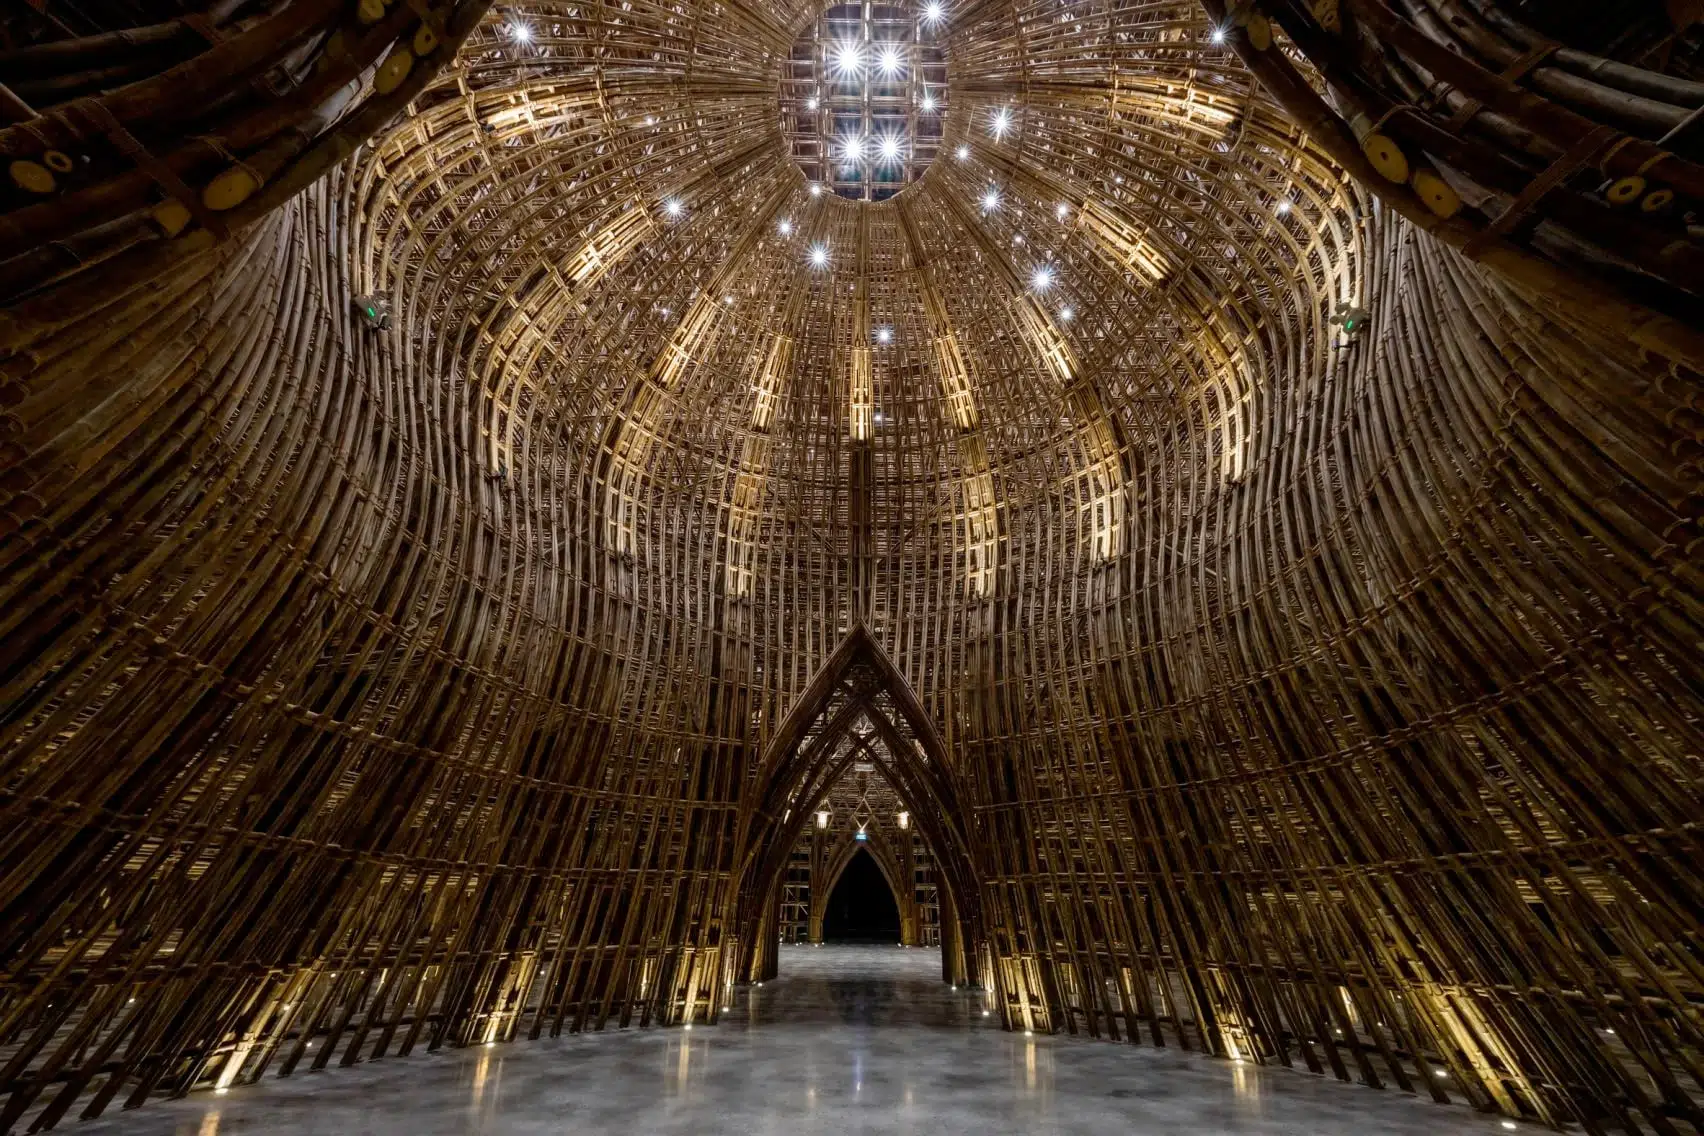 construccion en bambu sarquitectura verde vietnam cupula